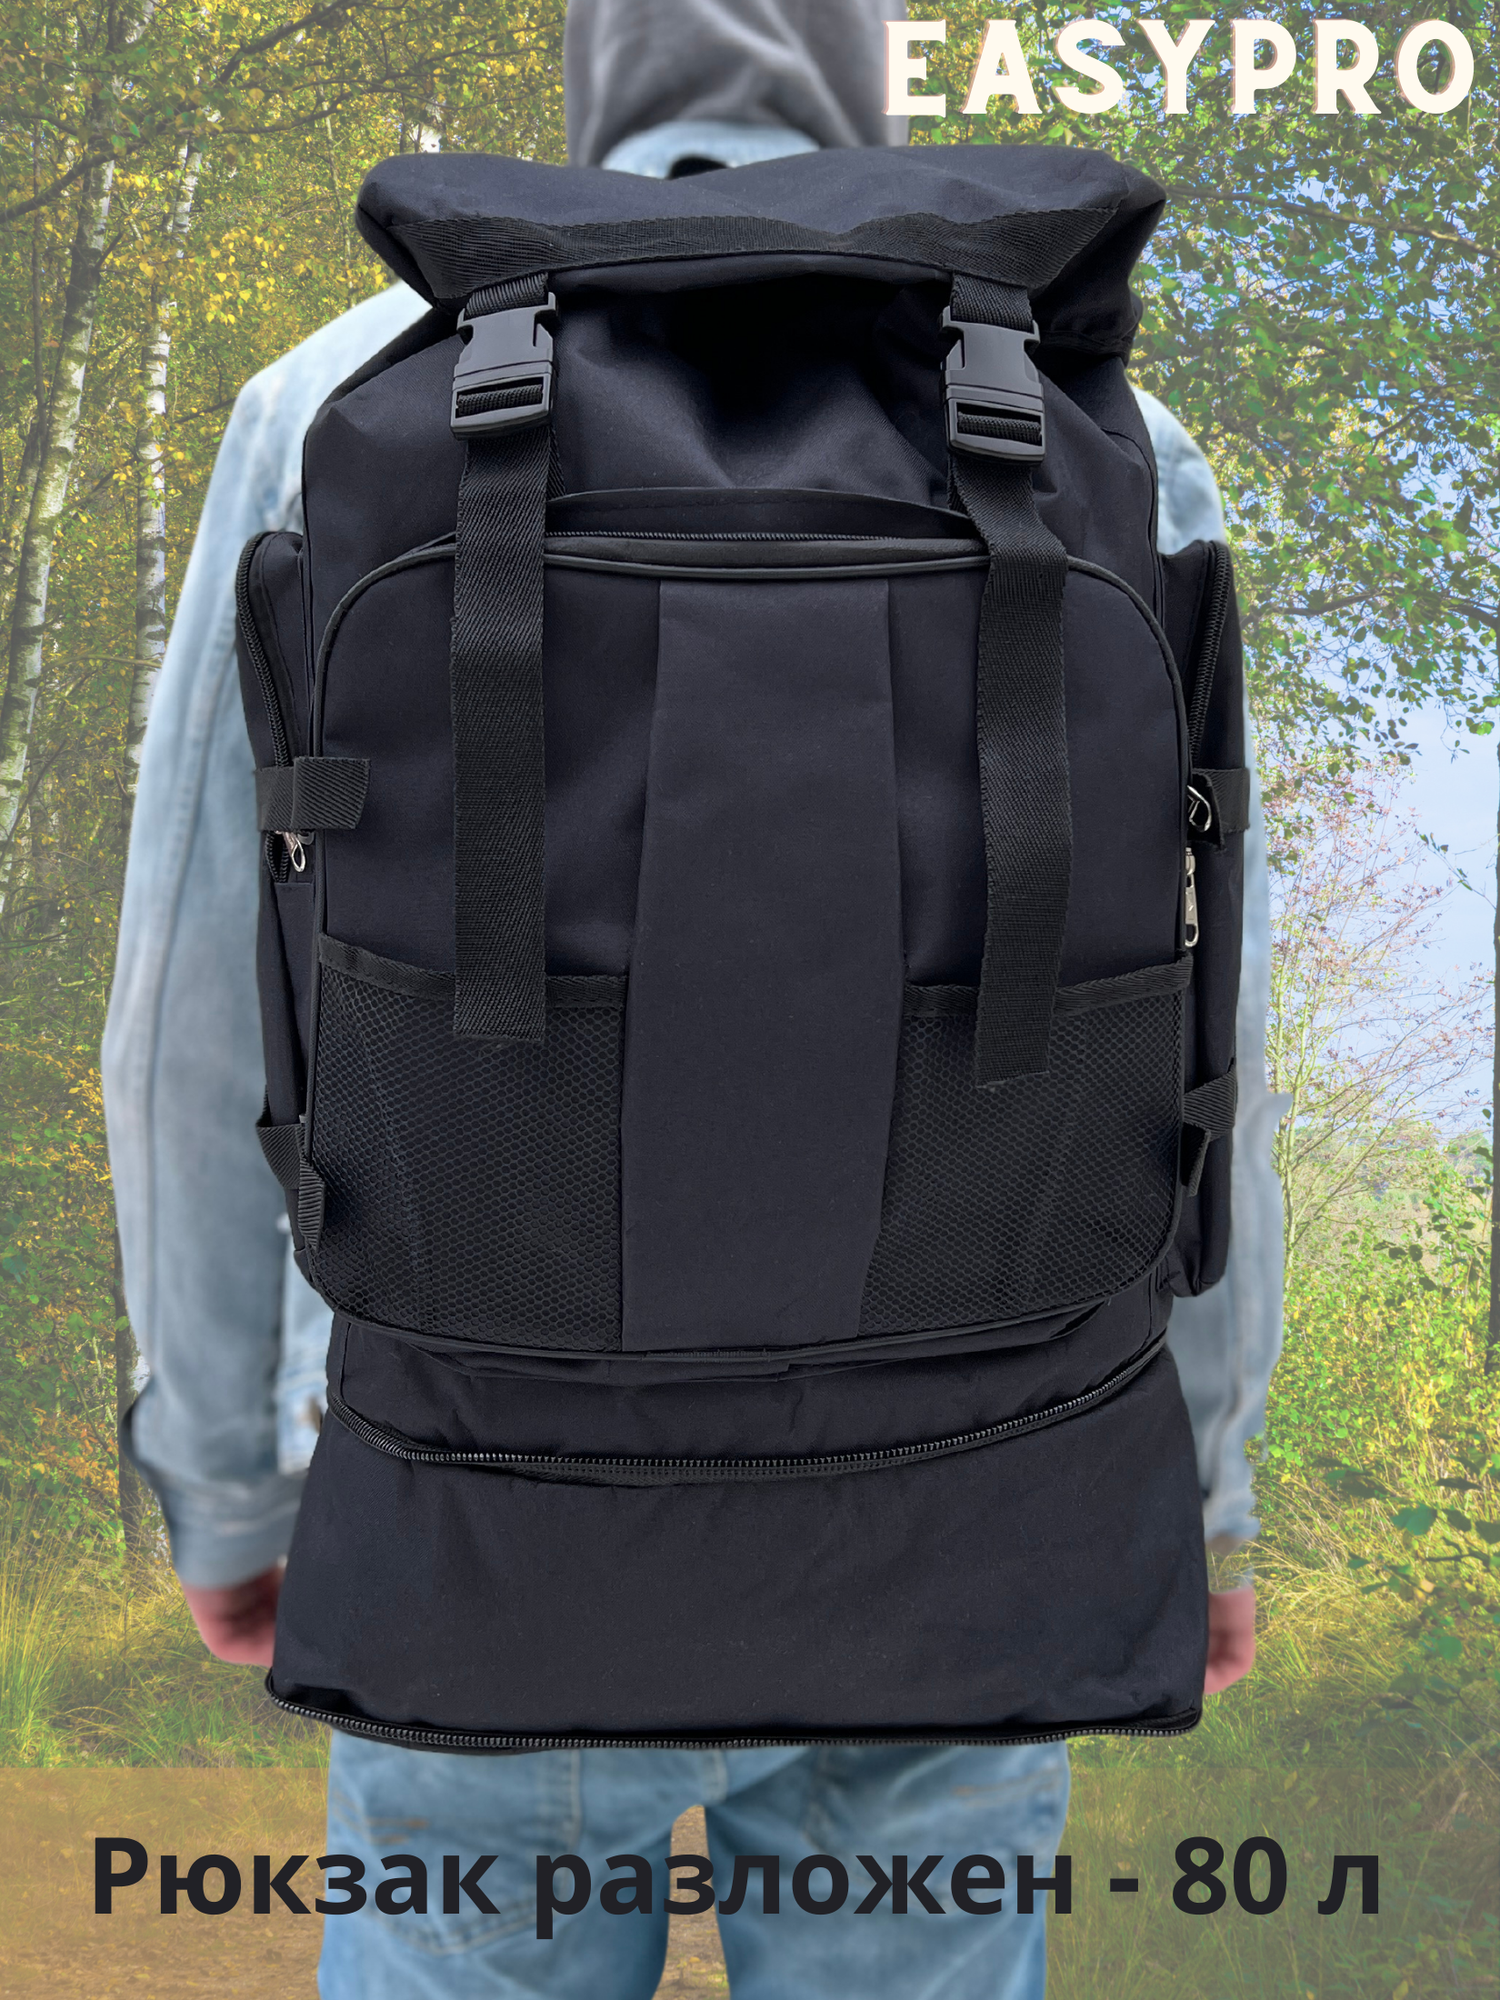 Рюкзак туристический 80 л, черный, рюкзак мужской женский Походный, спортивный, баул, для охоты, рыбалки, туризма